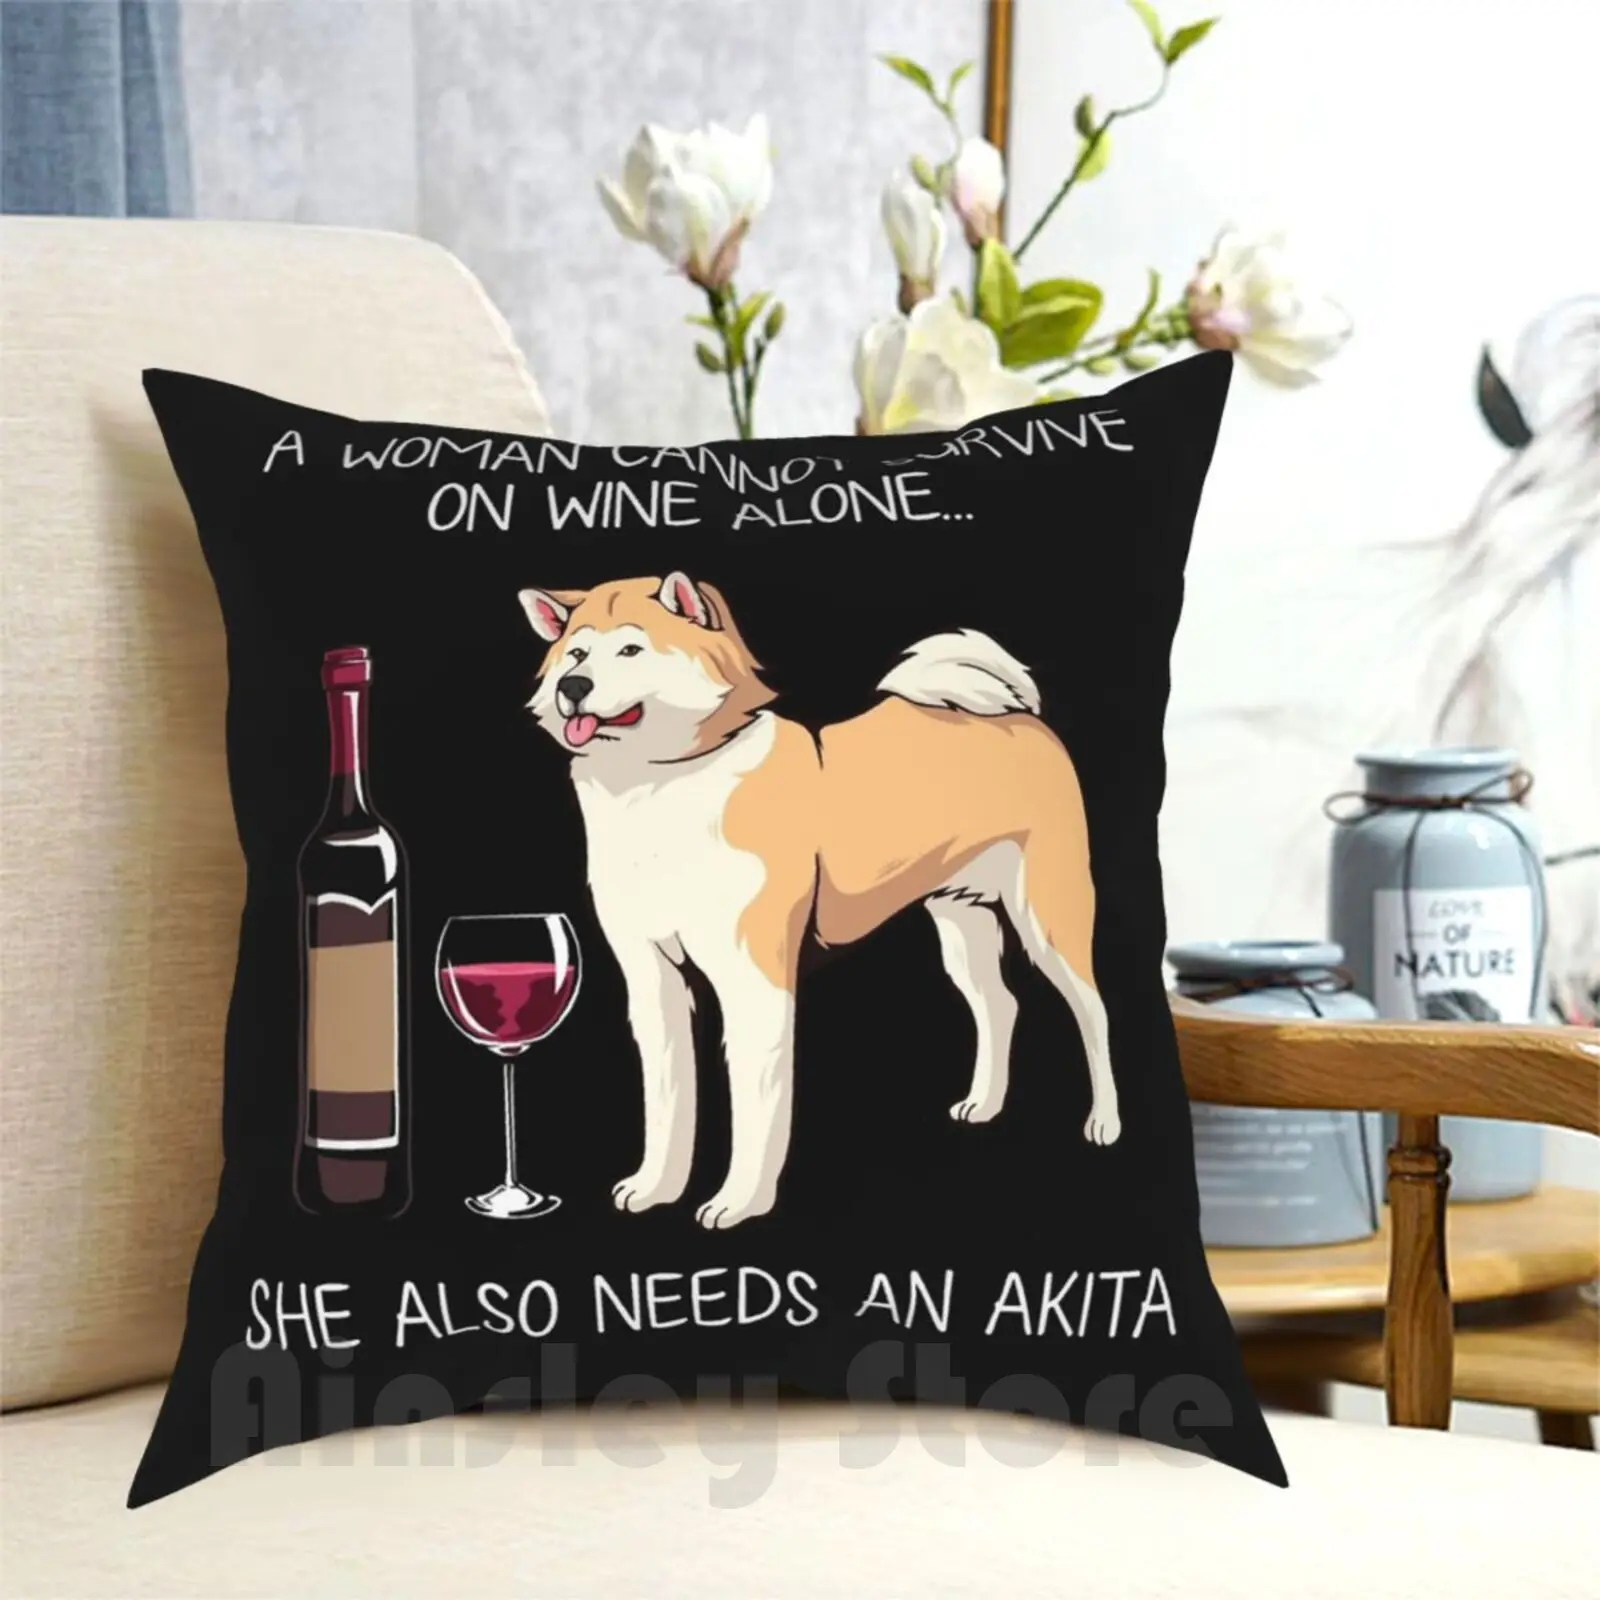 

Забавная Подушка Akita And Wine для собаки, мягкая задняя крышка для дома с рисунком, забавная собака для мамы, забавная собака и вино, собачка, забавная кошка